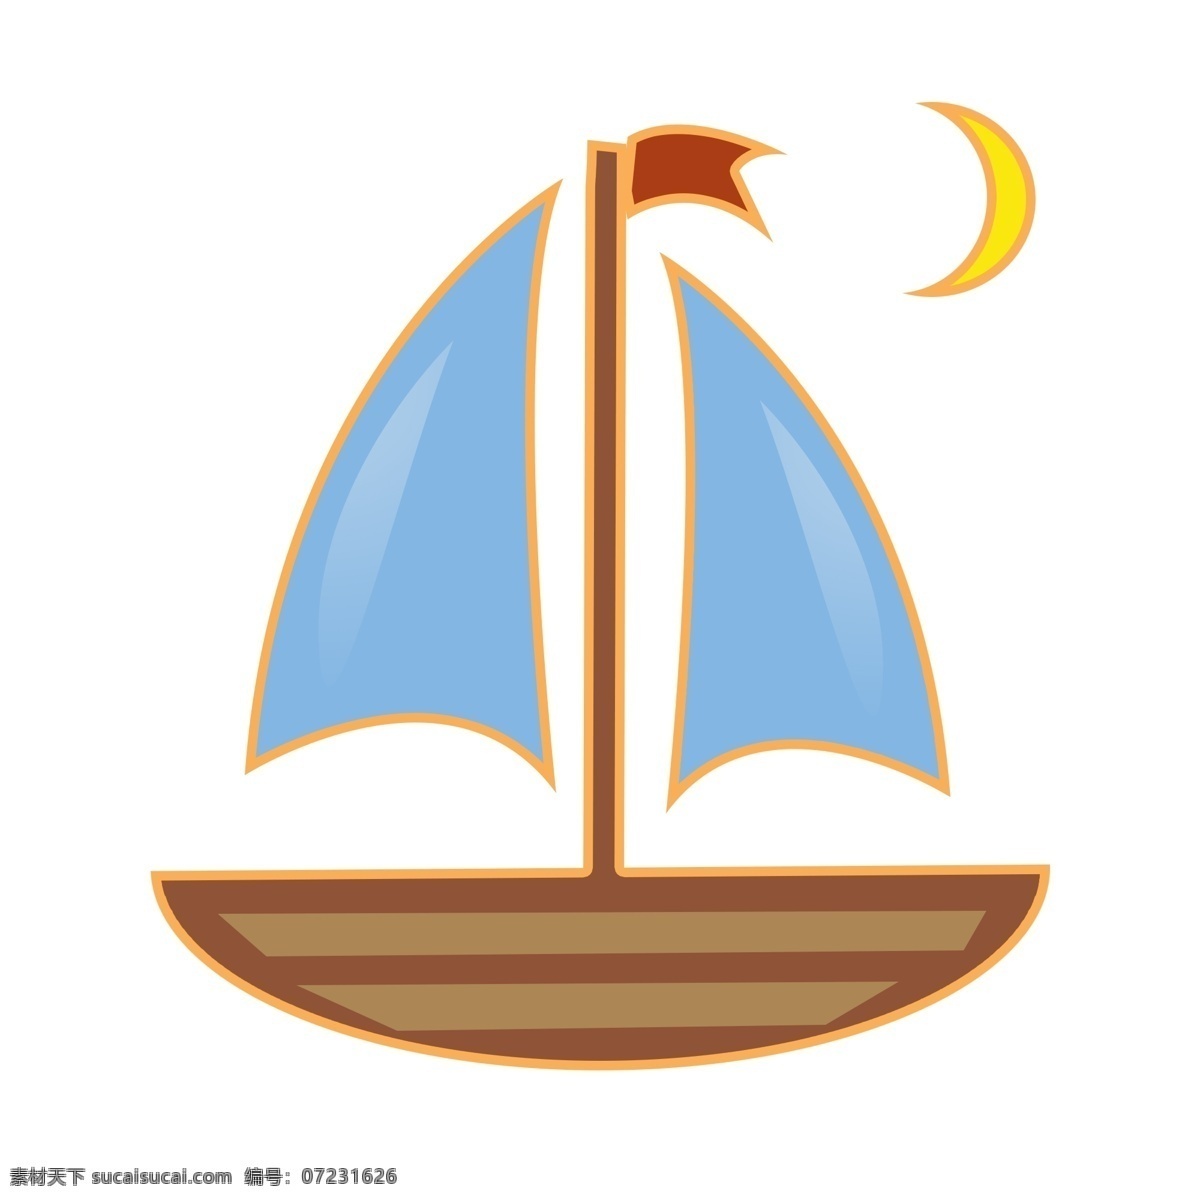 卡通 手绘 夏日 帆船 渐变色 月亮 一帆风顺 吉祥 碧海 蓝天 乘船 船帆 水上设施 交通工具